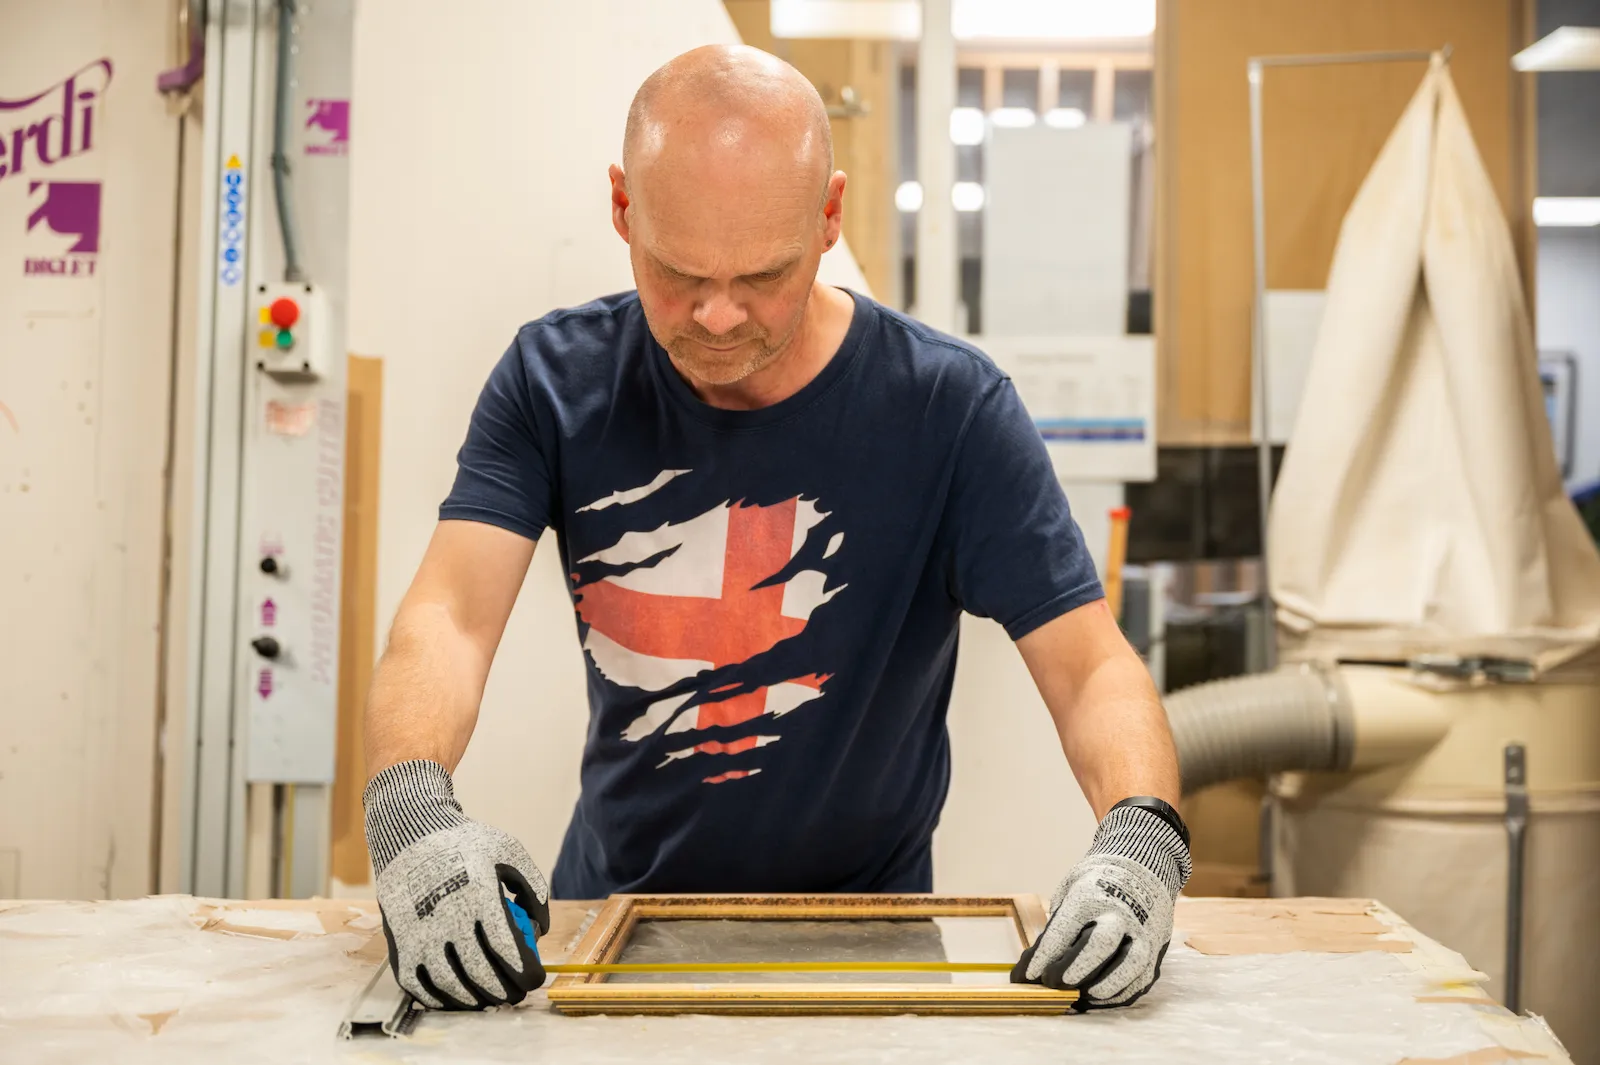 A member of the framing team preparing to reglaze a frame